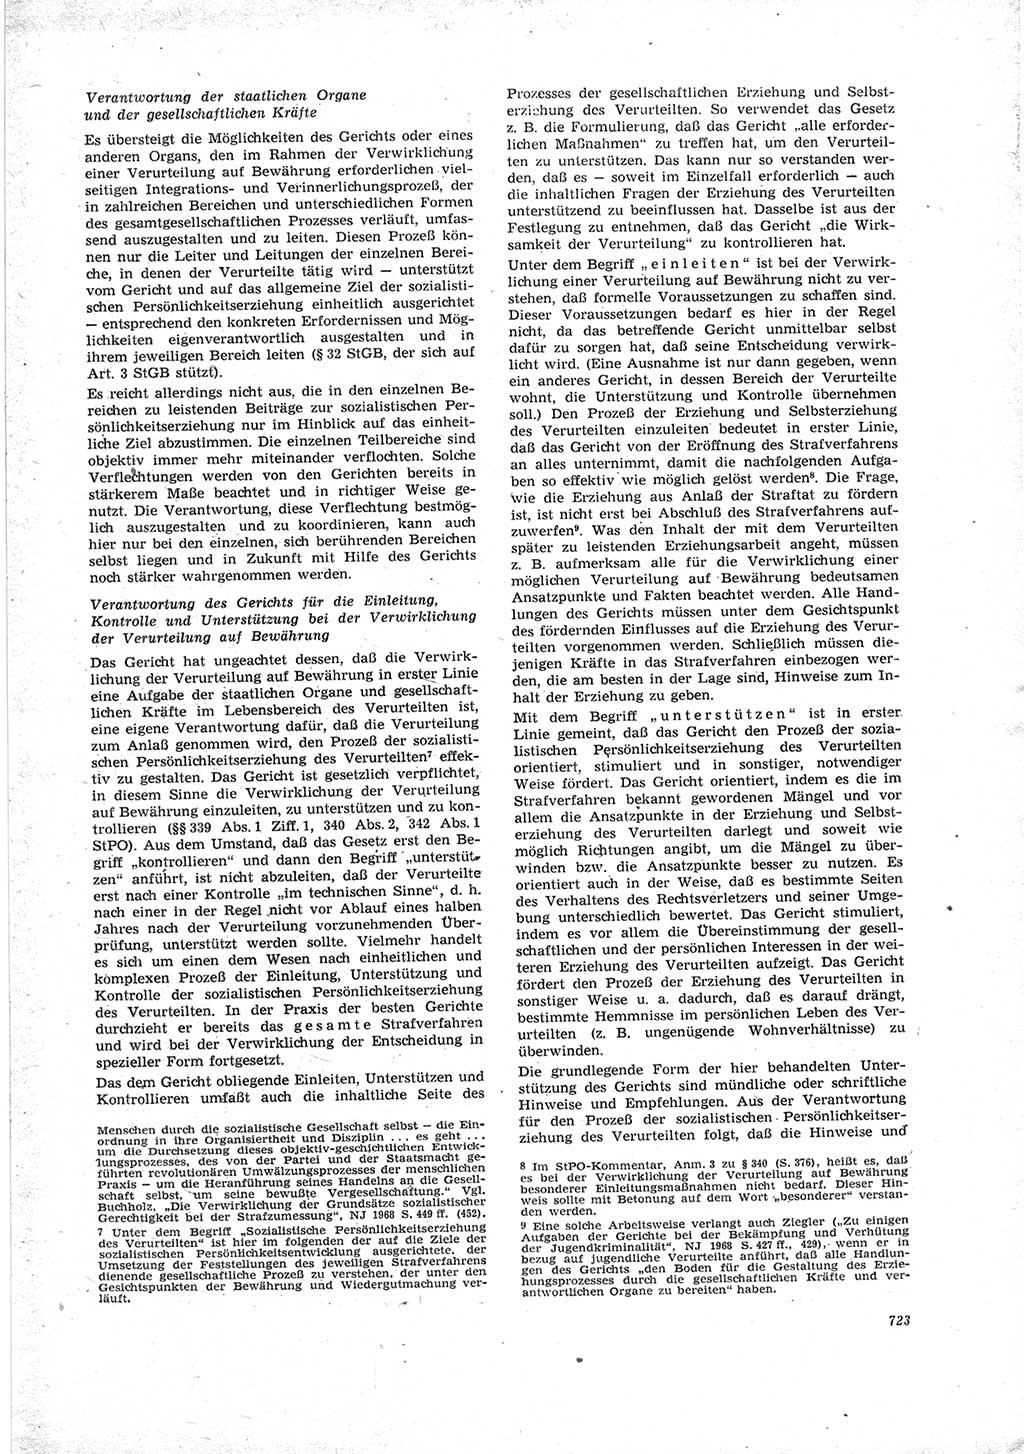 Neue Justiz (NJ), Zeitschrift für Recht und Rechtswissenschaft [Deutsche Demokratische Republik (DDR)], 23. Jahrgang 1969, Seite 723 (NJ DDR 1969, S. 723)